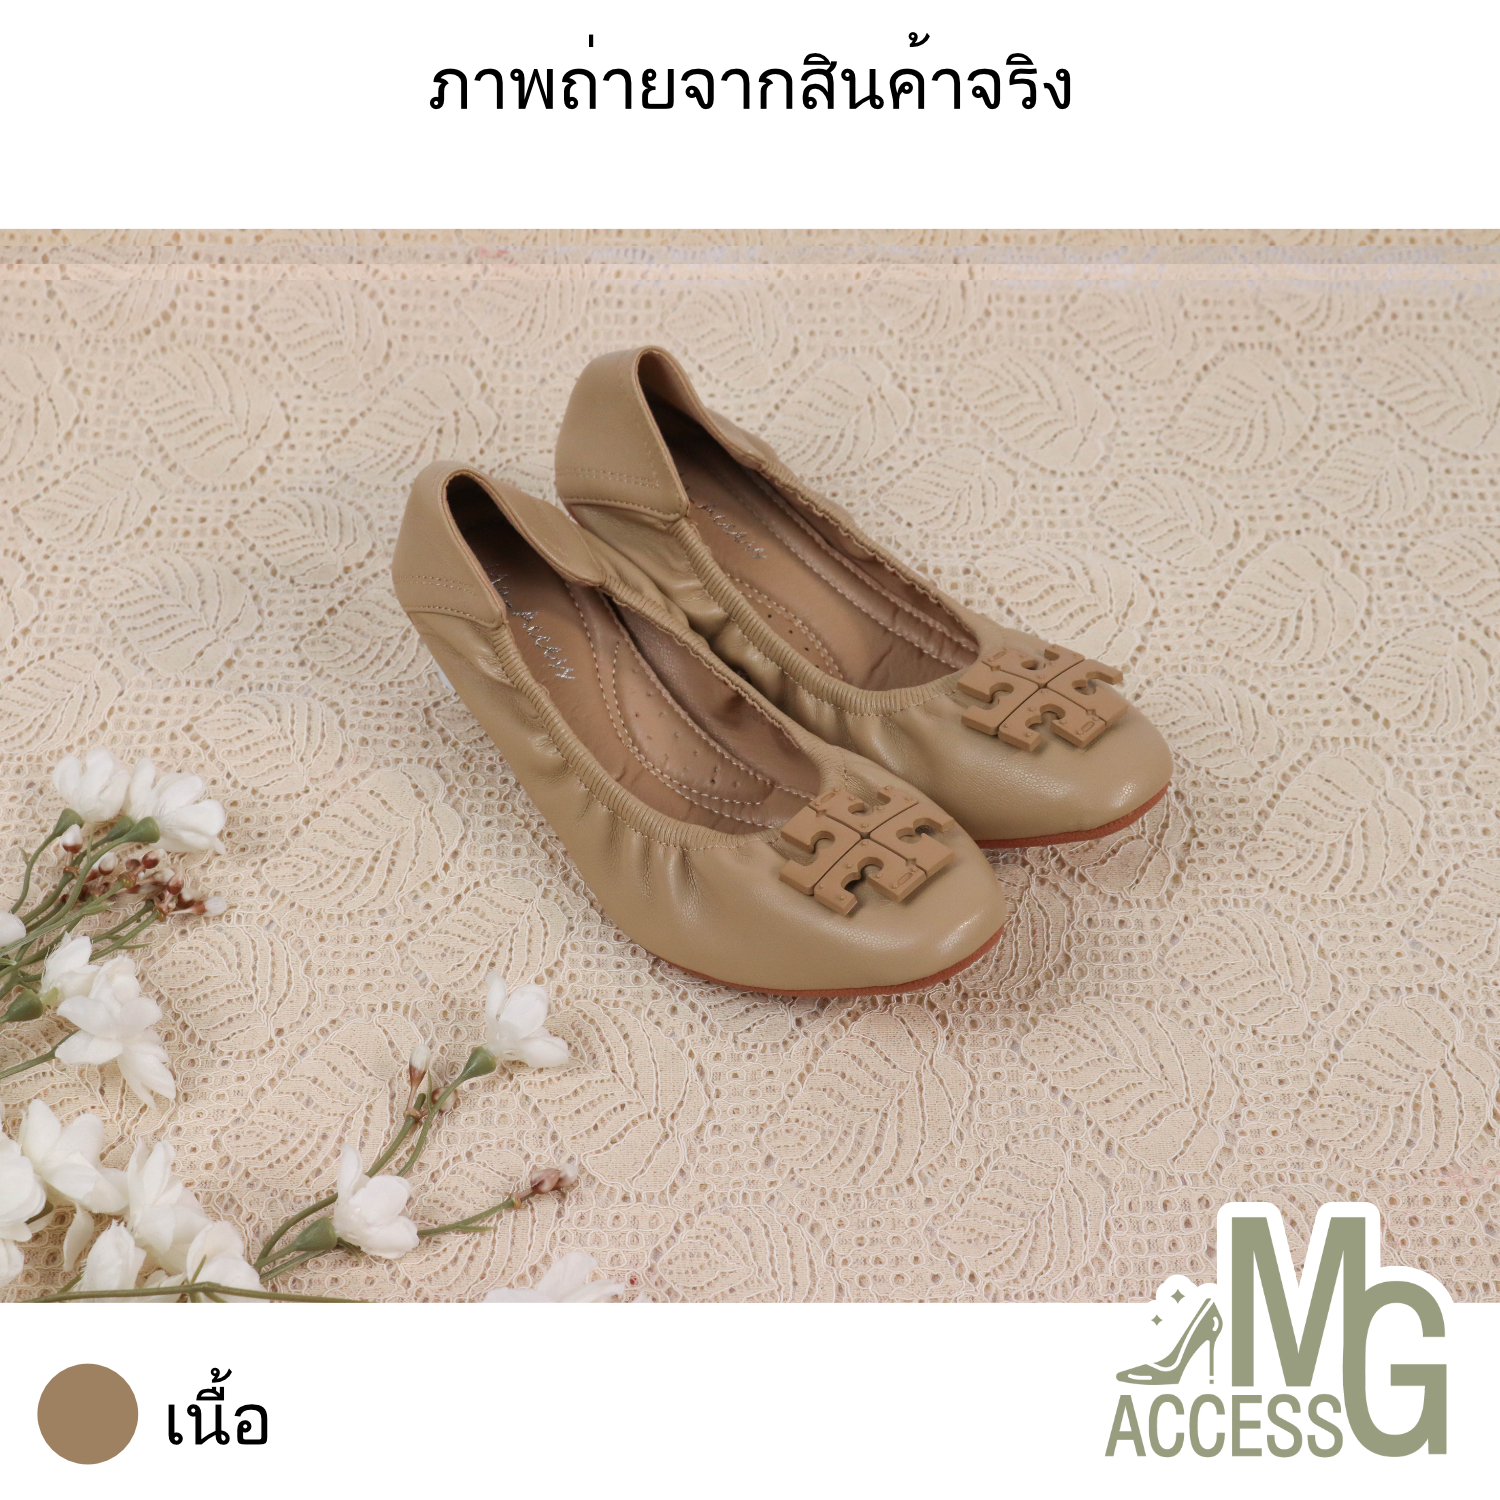 MG access สินค้าแท้ รองเท้าบัลเลต์ บัลเลต์ผู้หญิง รองเท้าบัลเลต์แฟชั่นผู้หญิง รหัสสินค้า A389-3